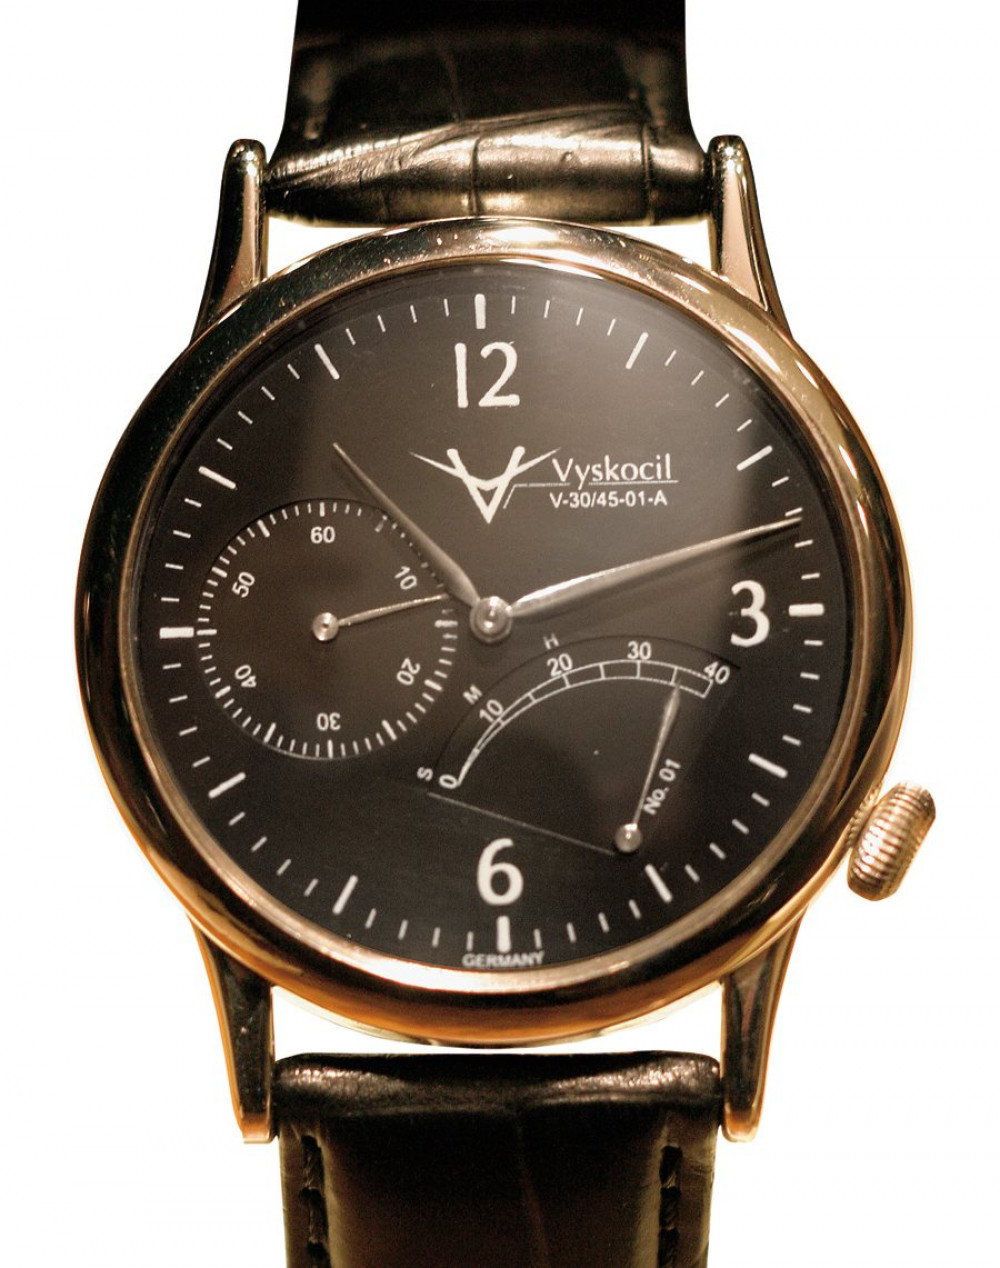 Zegarek firmy Vyskocil, model V-30/45-01-A